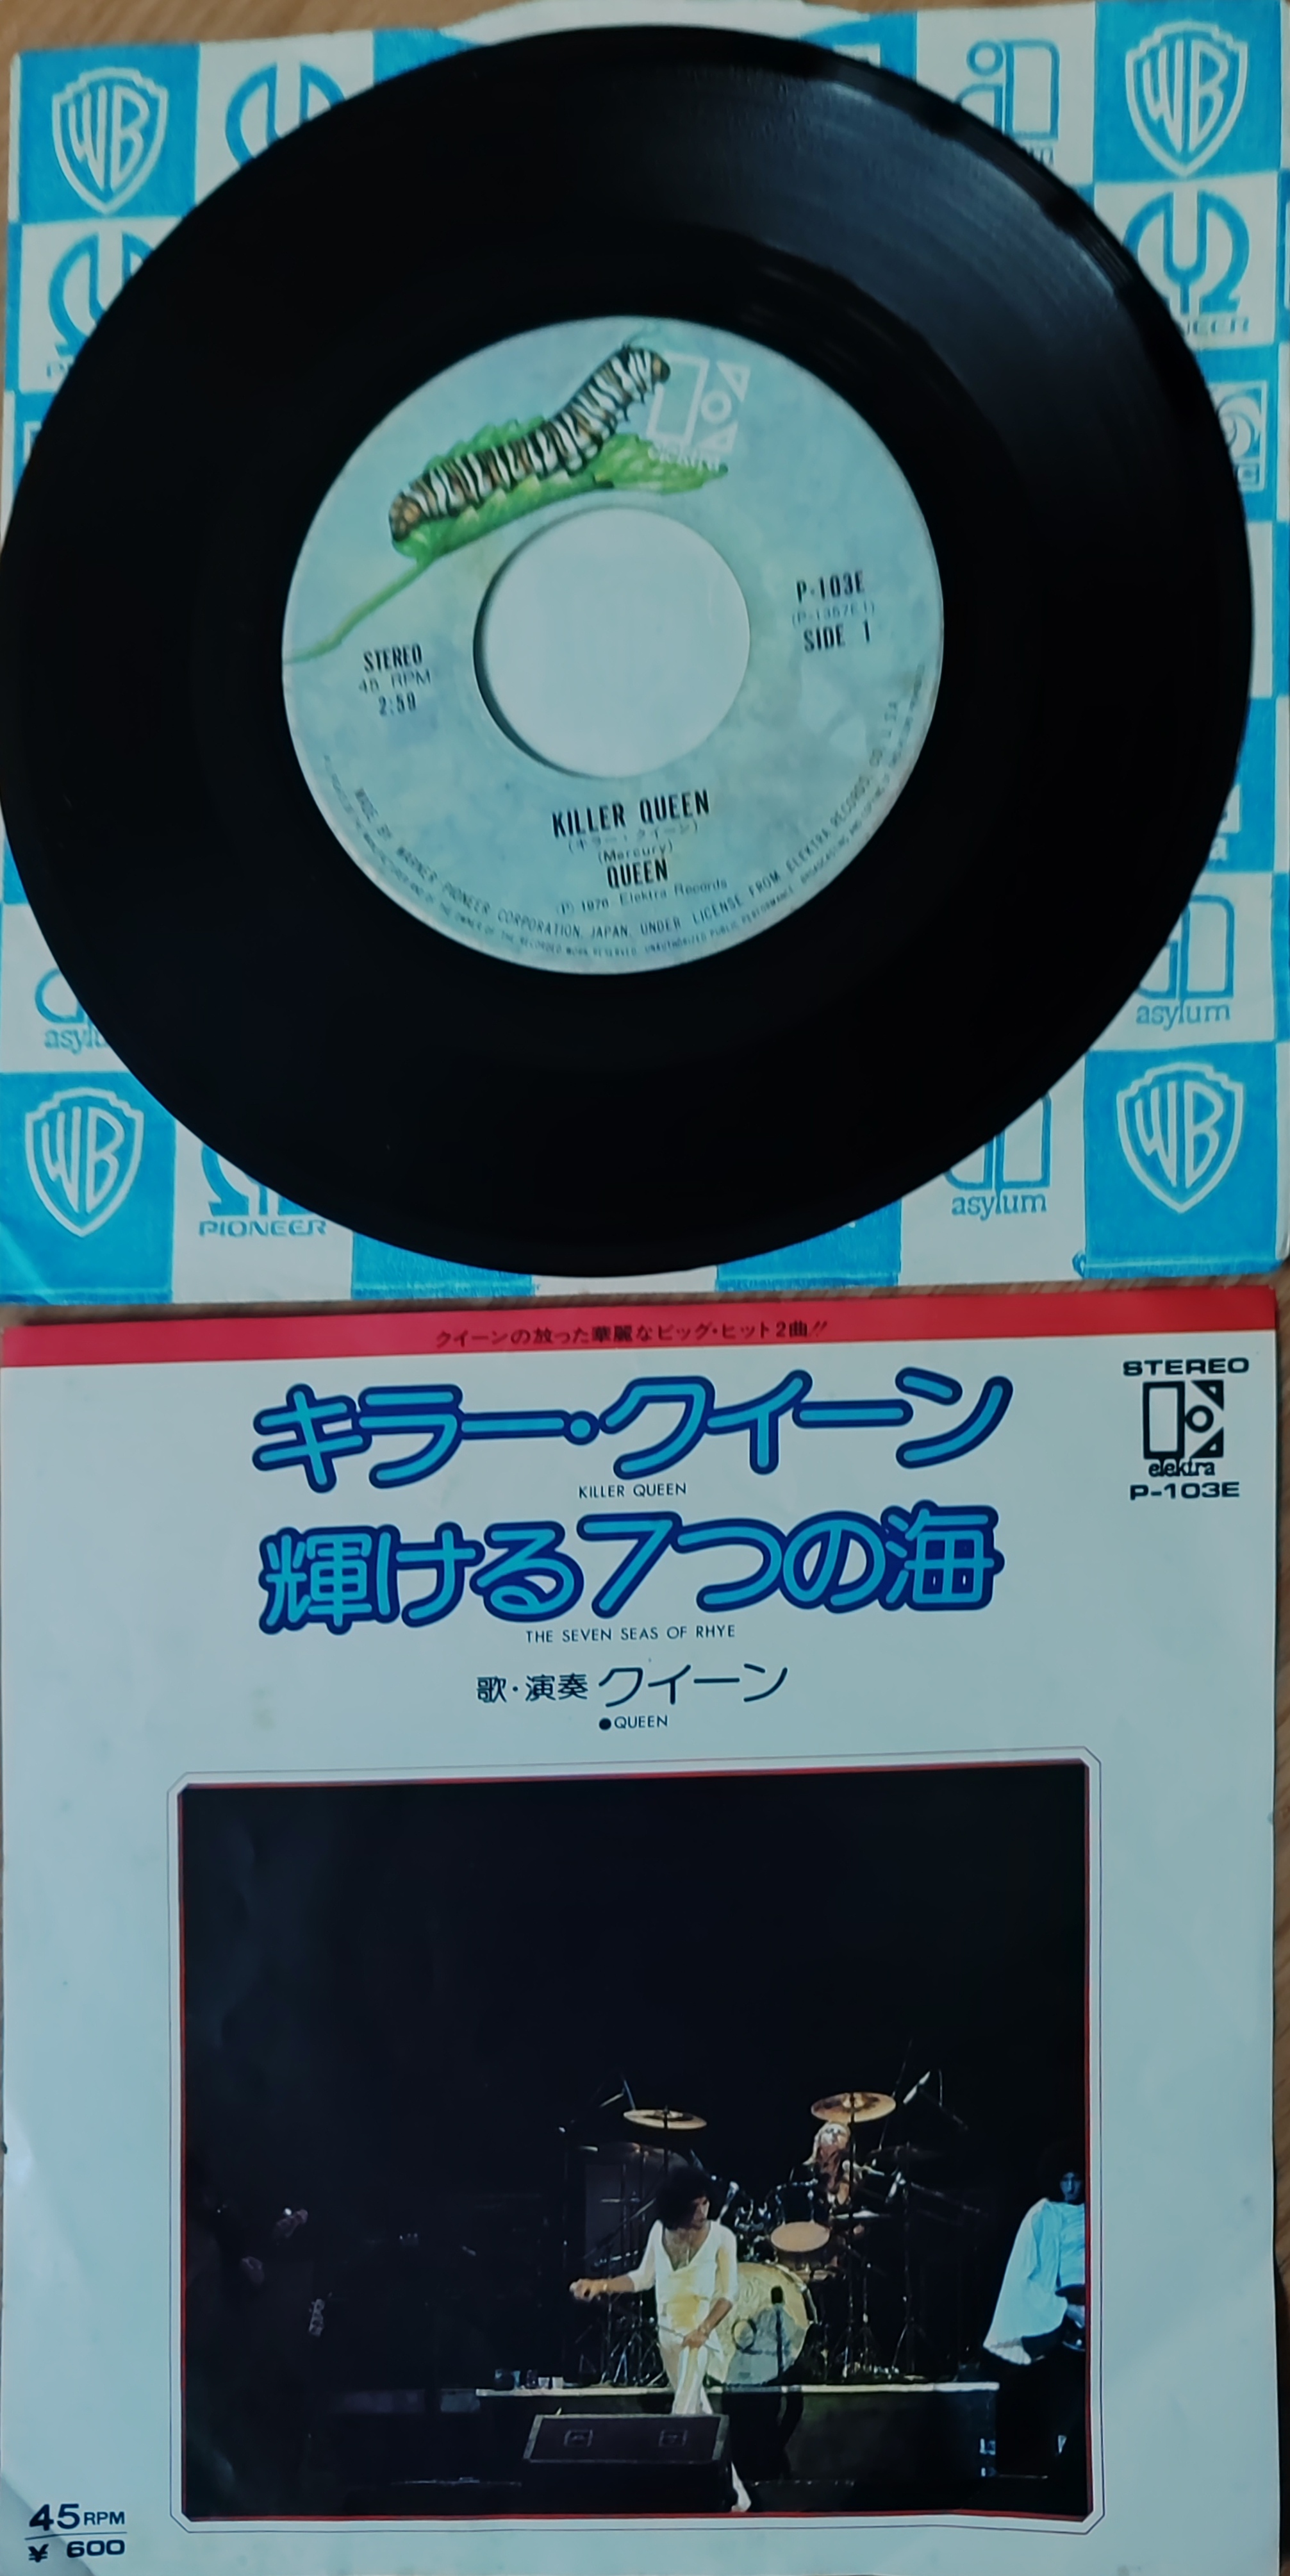 QUEEN - Killer Queen / The Seven Seas of Rhye -  1976 Japonya Basım 45lik Plak 2. EL